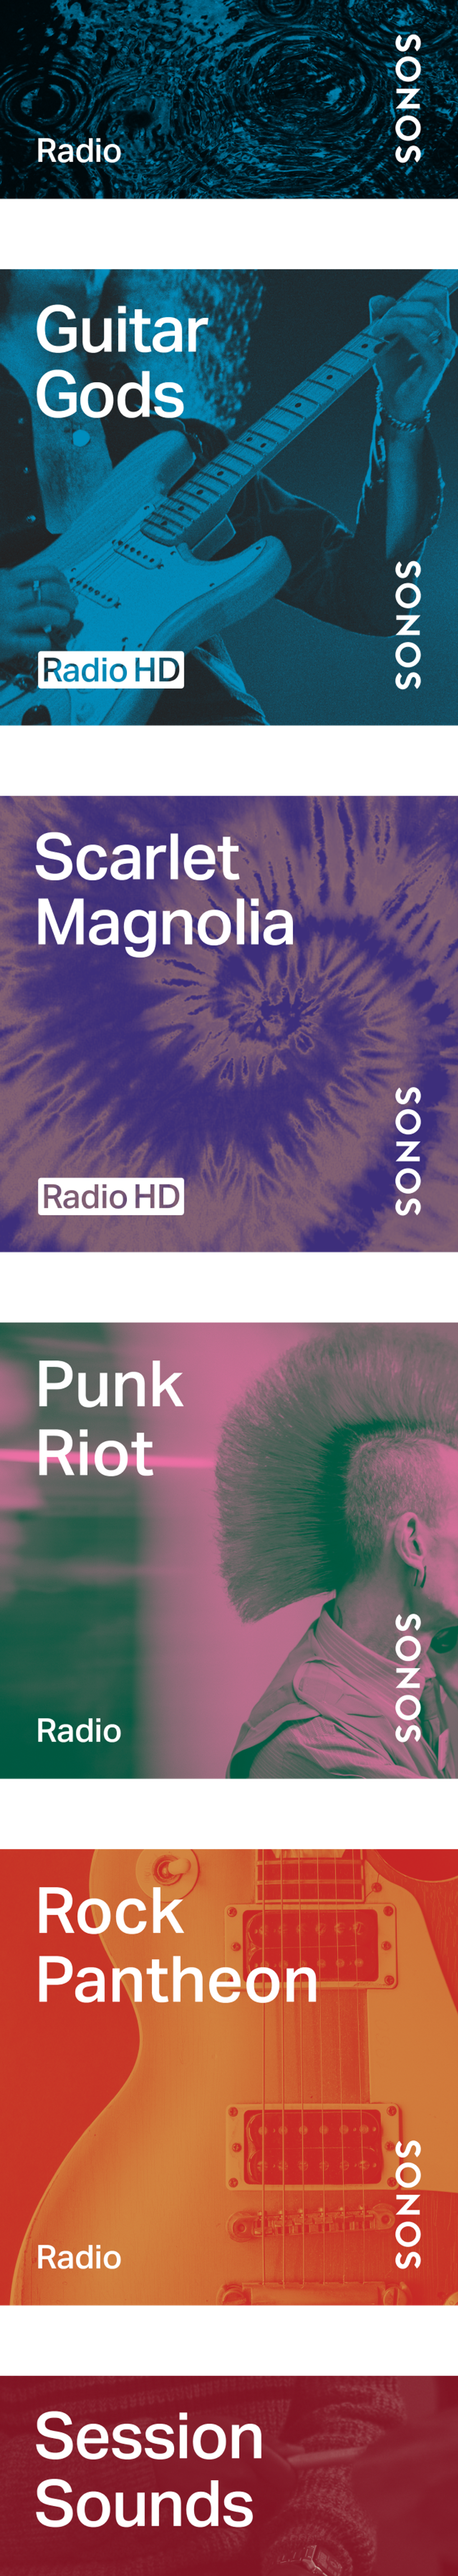 Emisoras de Sonos Radio